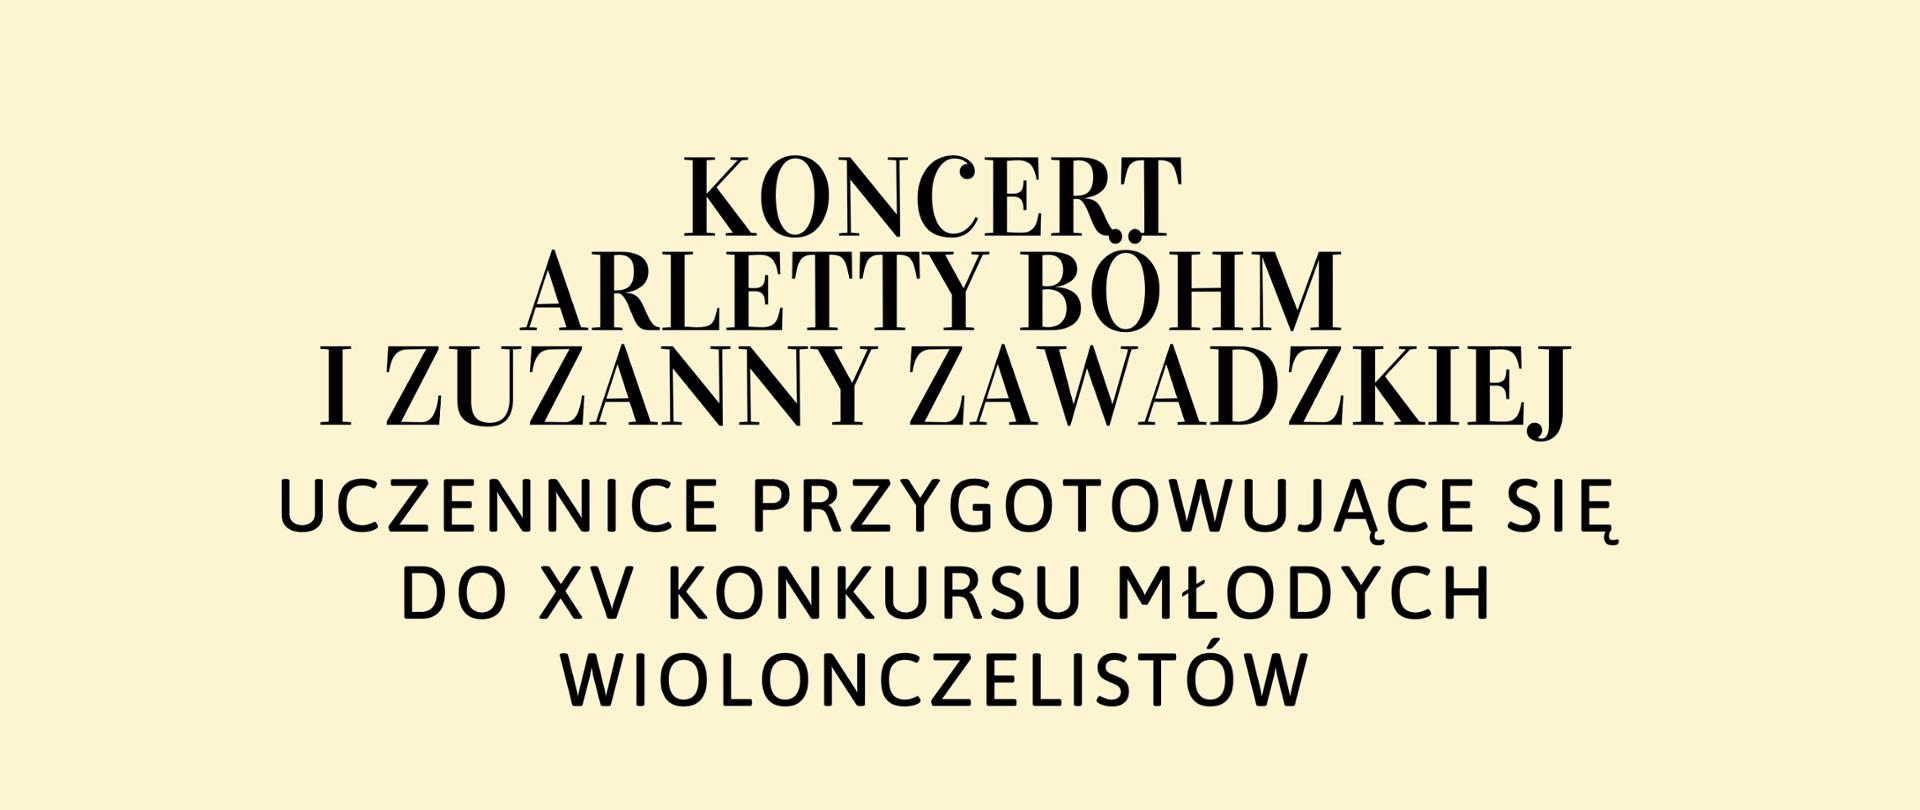 Plakat ma tło żółte, zawiera informacje związanie z koncertem uczennic p. Anny Furkałowskiej przygotowujące się do XV Konkursu Młodych Wiolonczelistów, z lewej strony obrazek pani grającej na wiolonczeli z prawej strony informację na temat miejsca godziny i terminu koncertu 